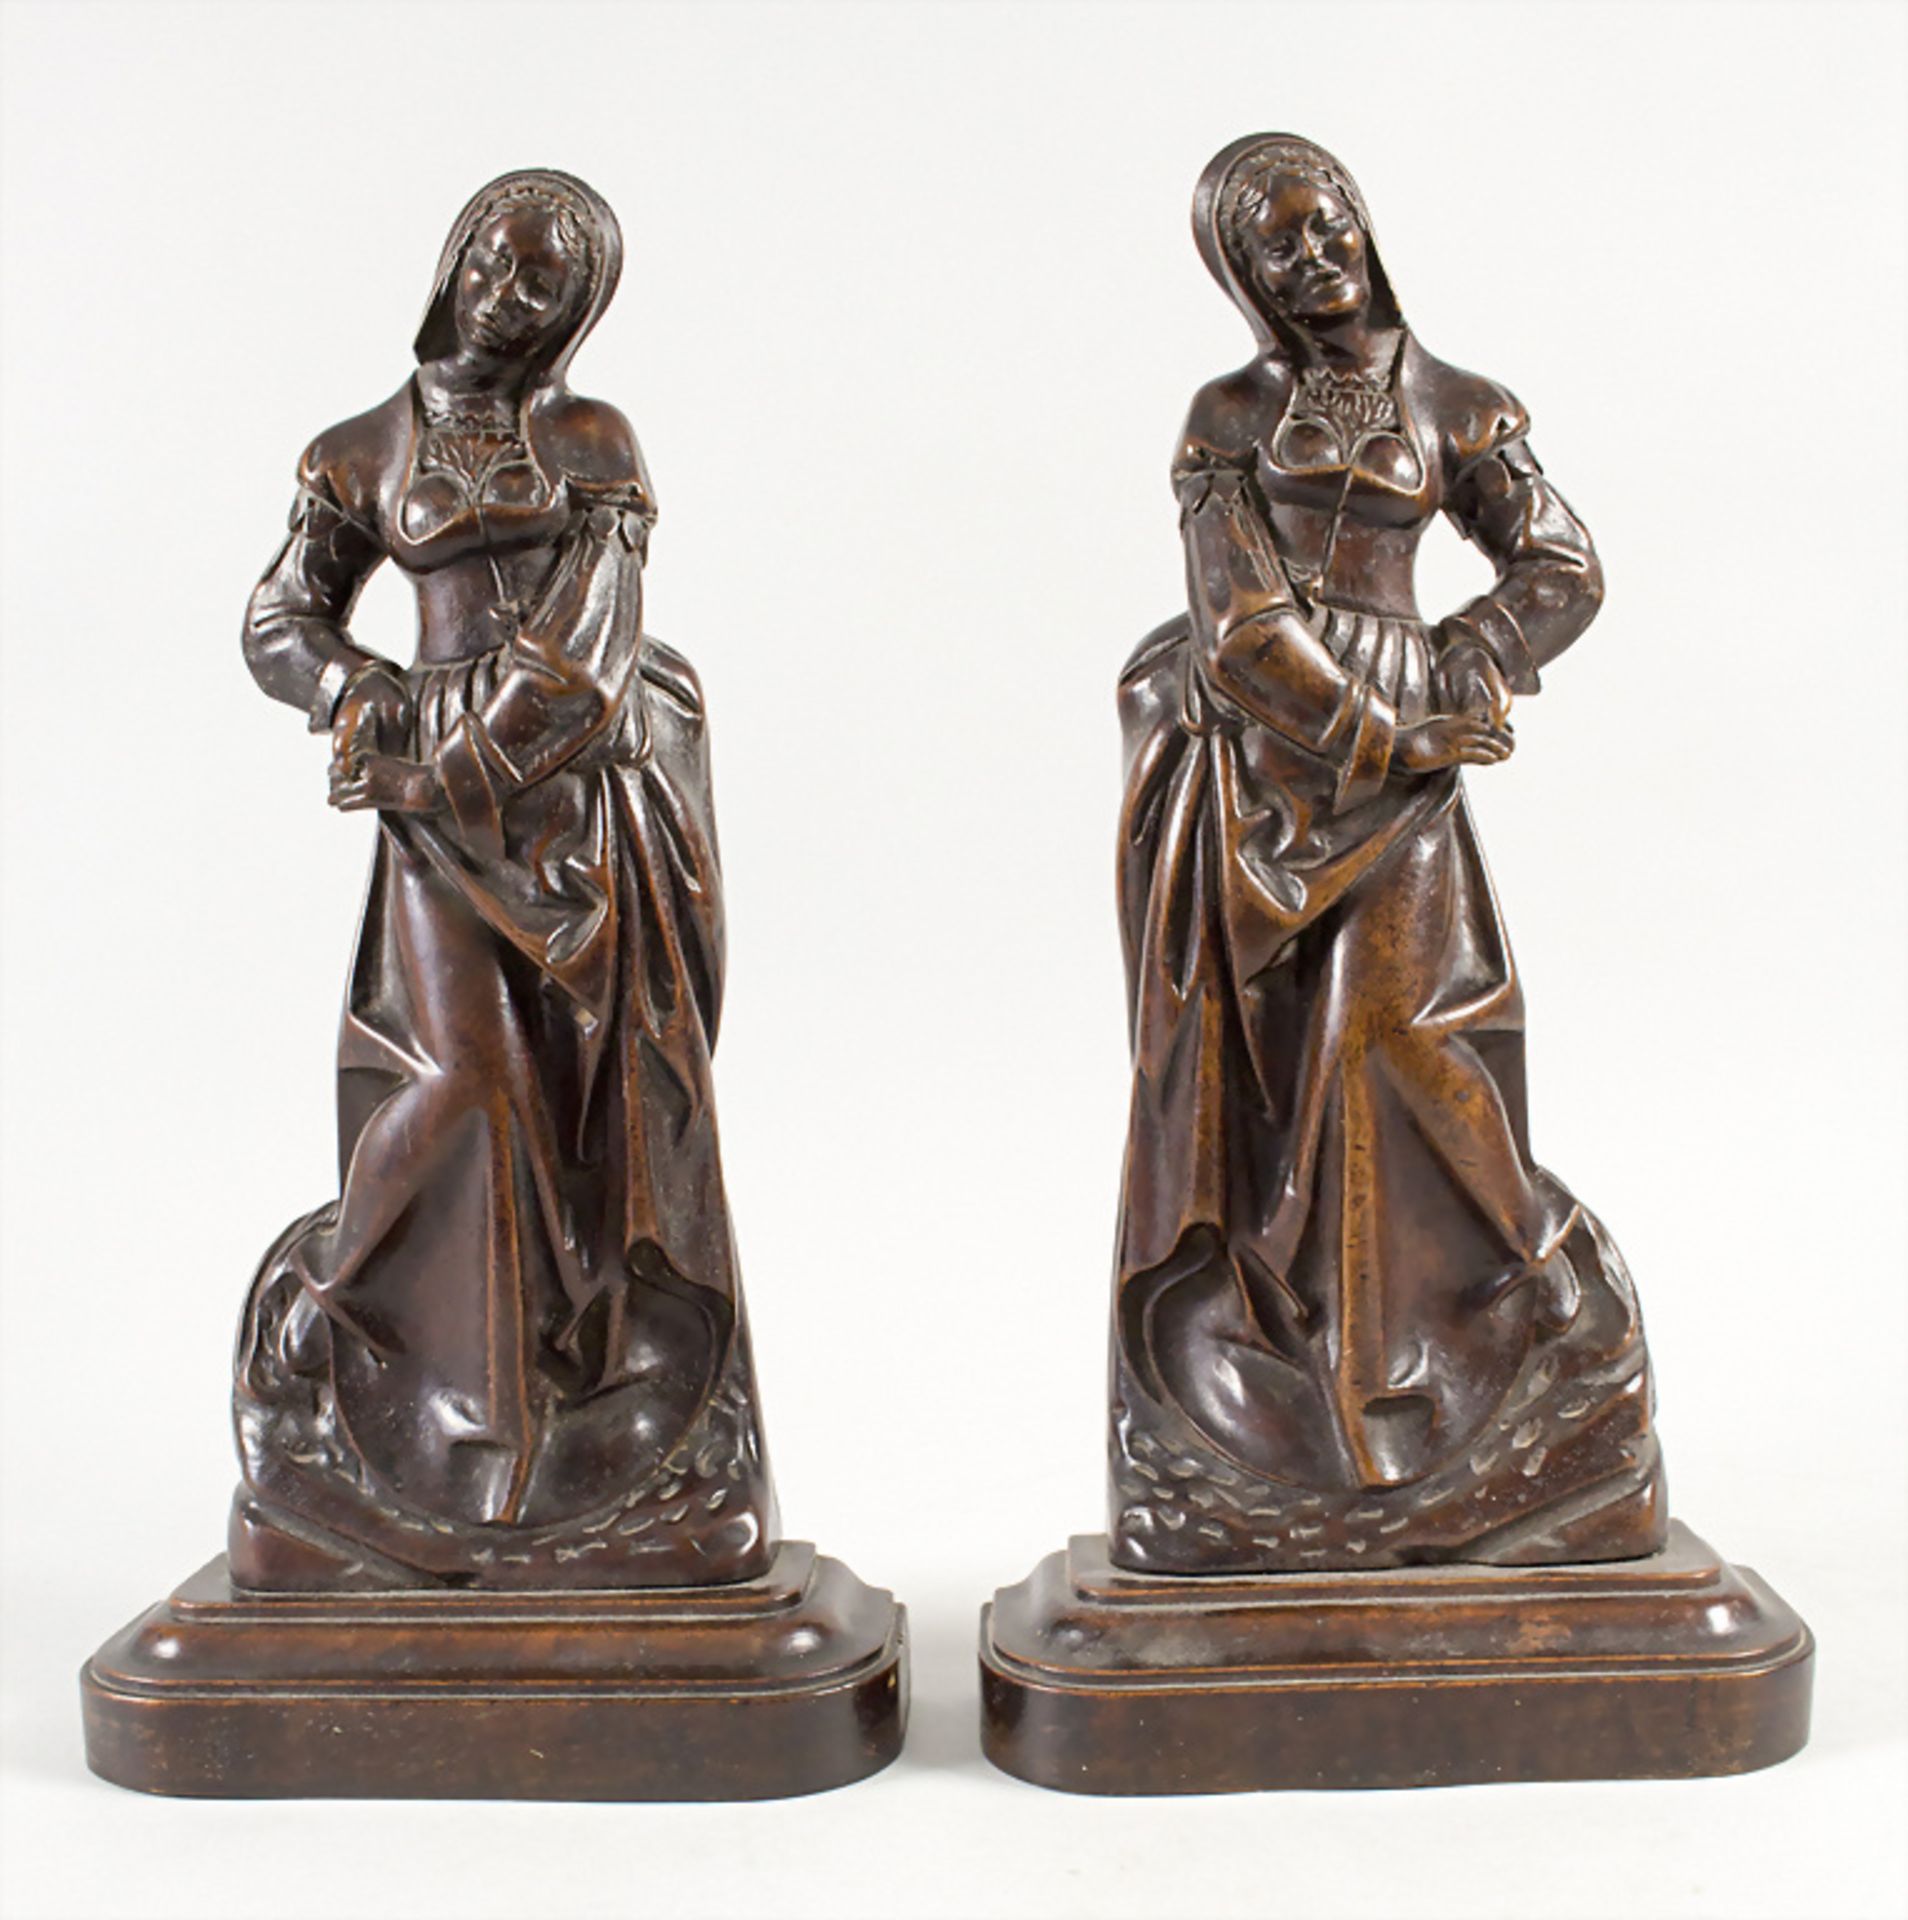 Paar Renaissance Skulpturen / A pair of Renaissance wooden sculptures, wohl 16. Jh. - Bild 3 aus 6